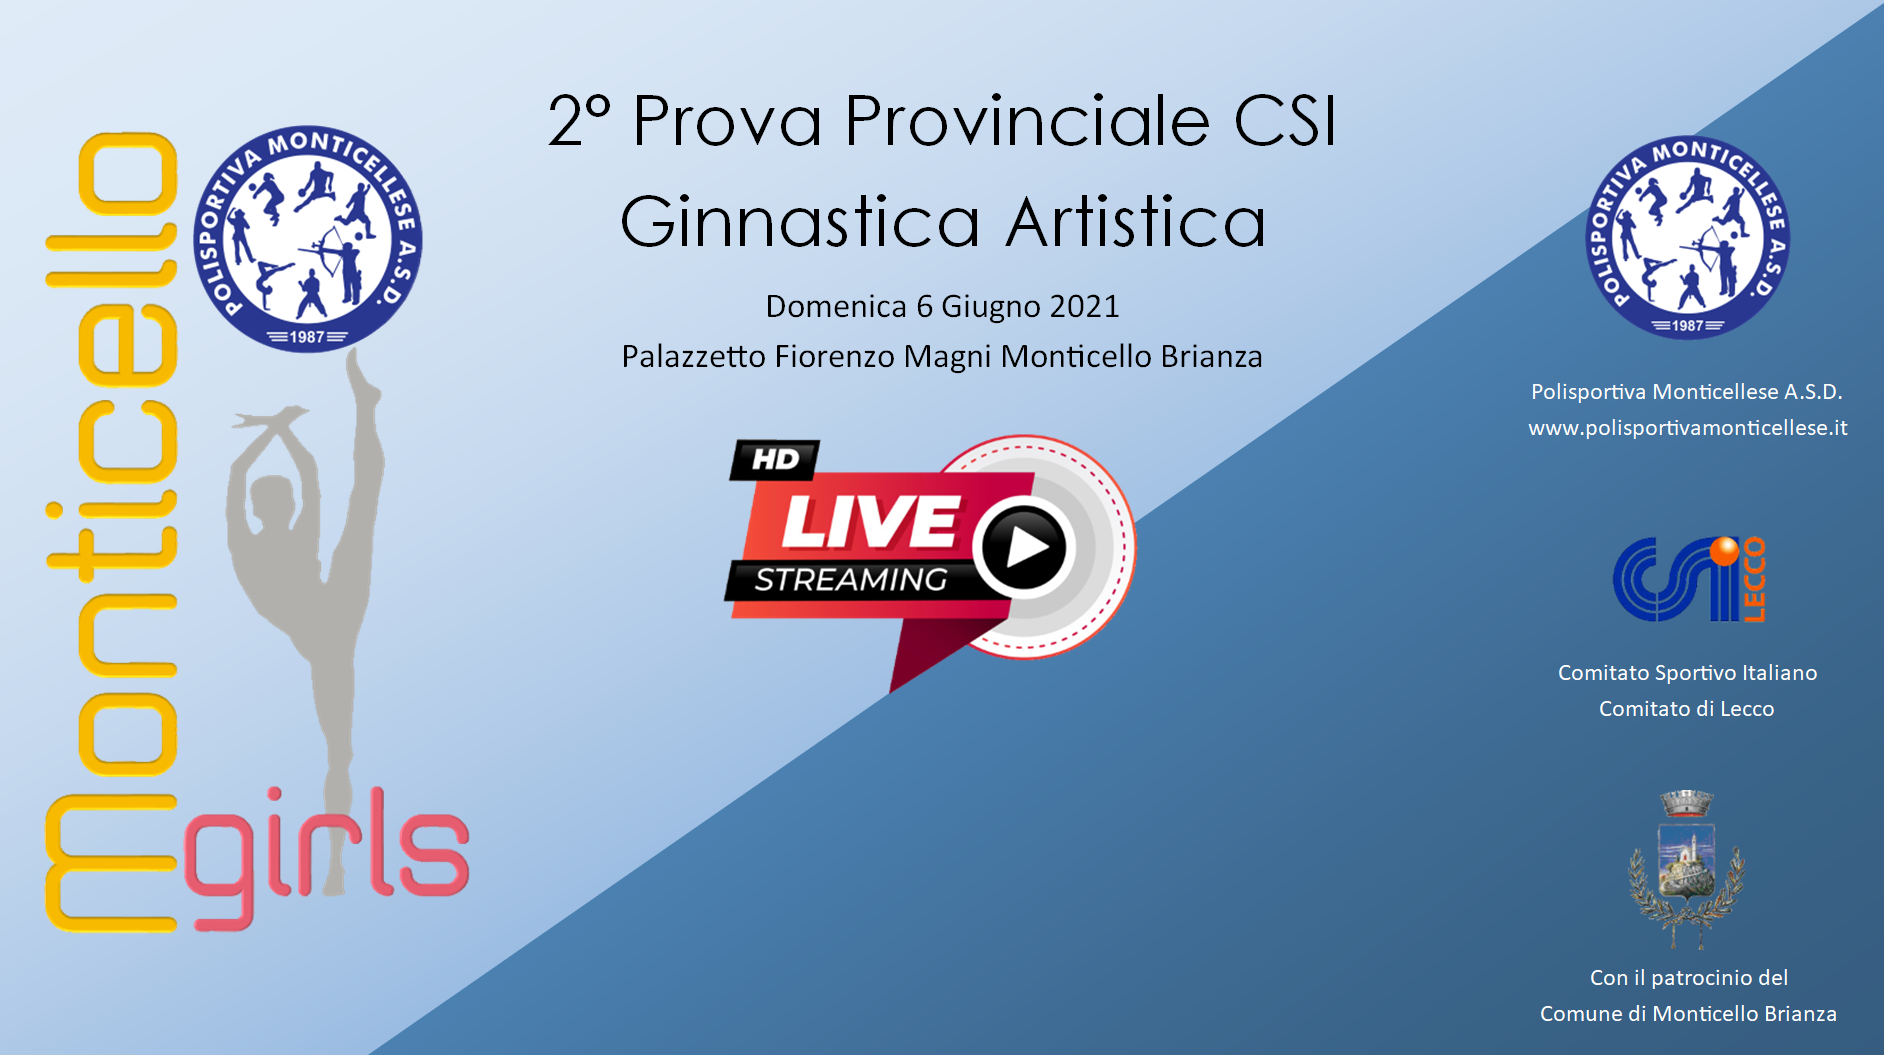 Palazzetto Fiorenzo Magni domenica 6 Giugno 2021
LIVE sul canale YouTube della Polisportiva